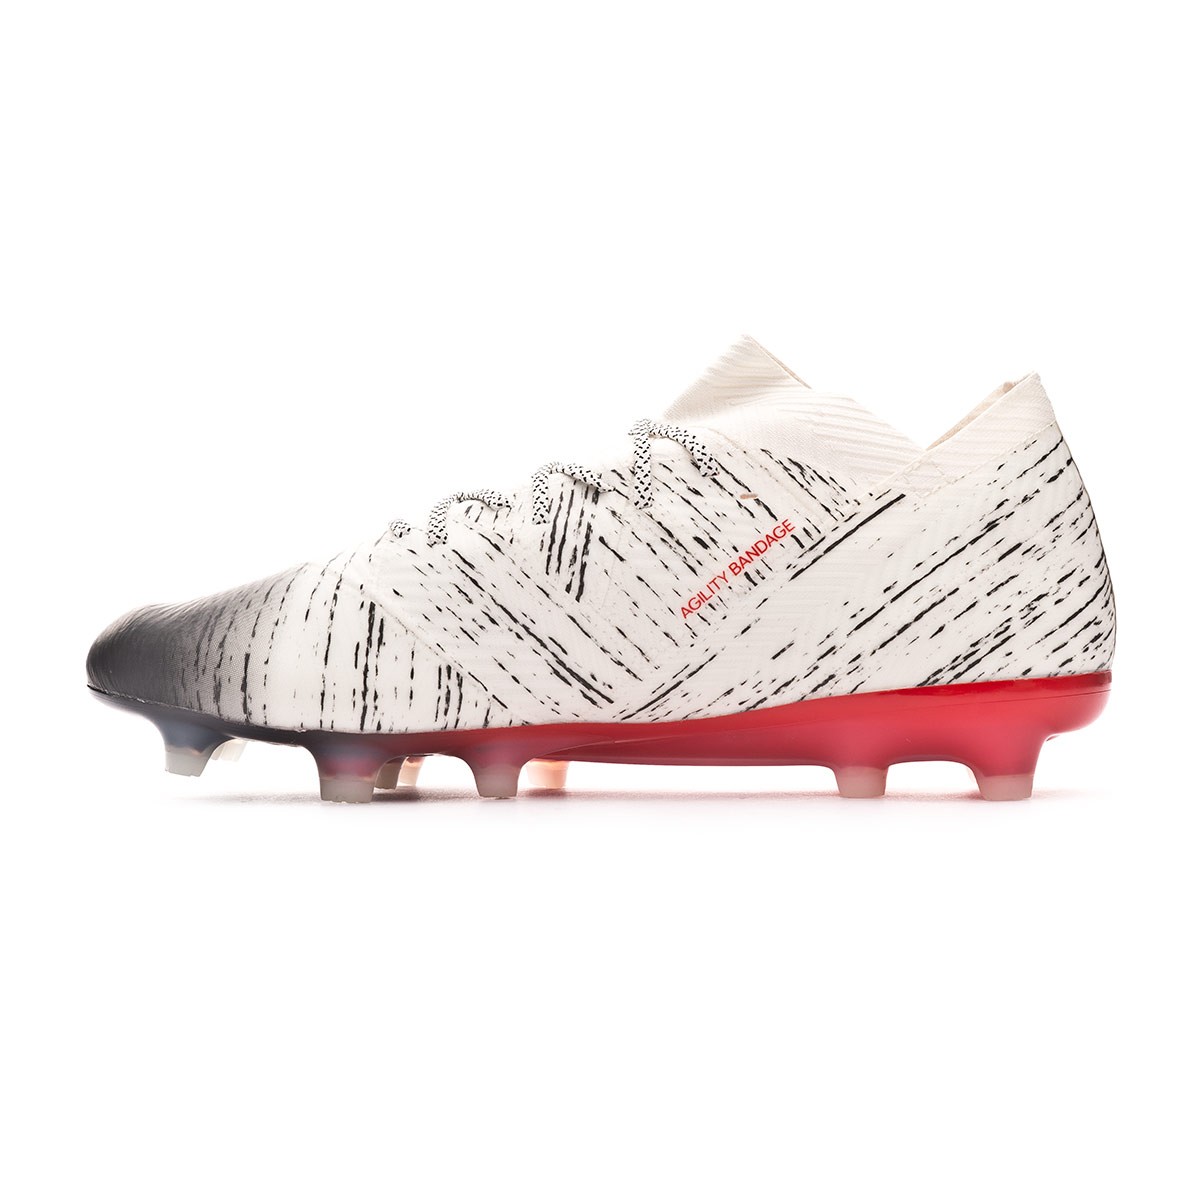 adidas nemeziz red and white